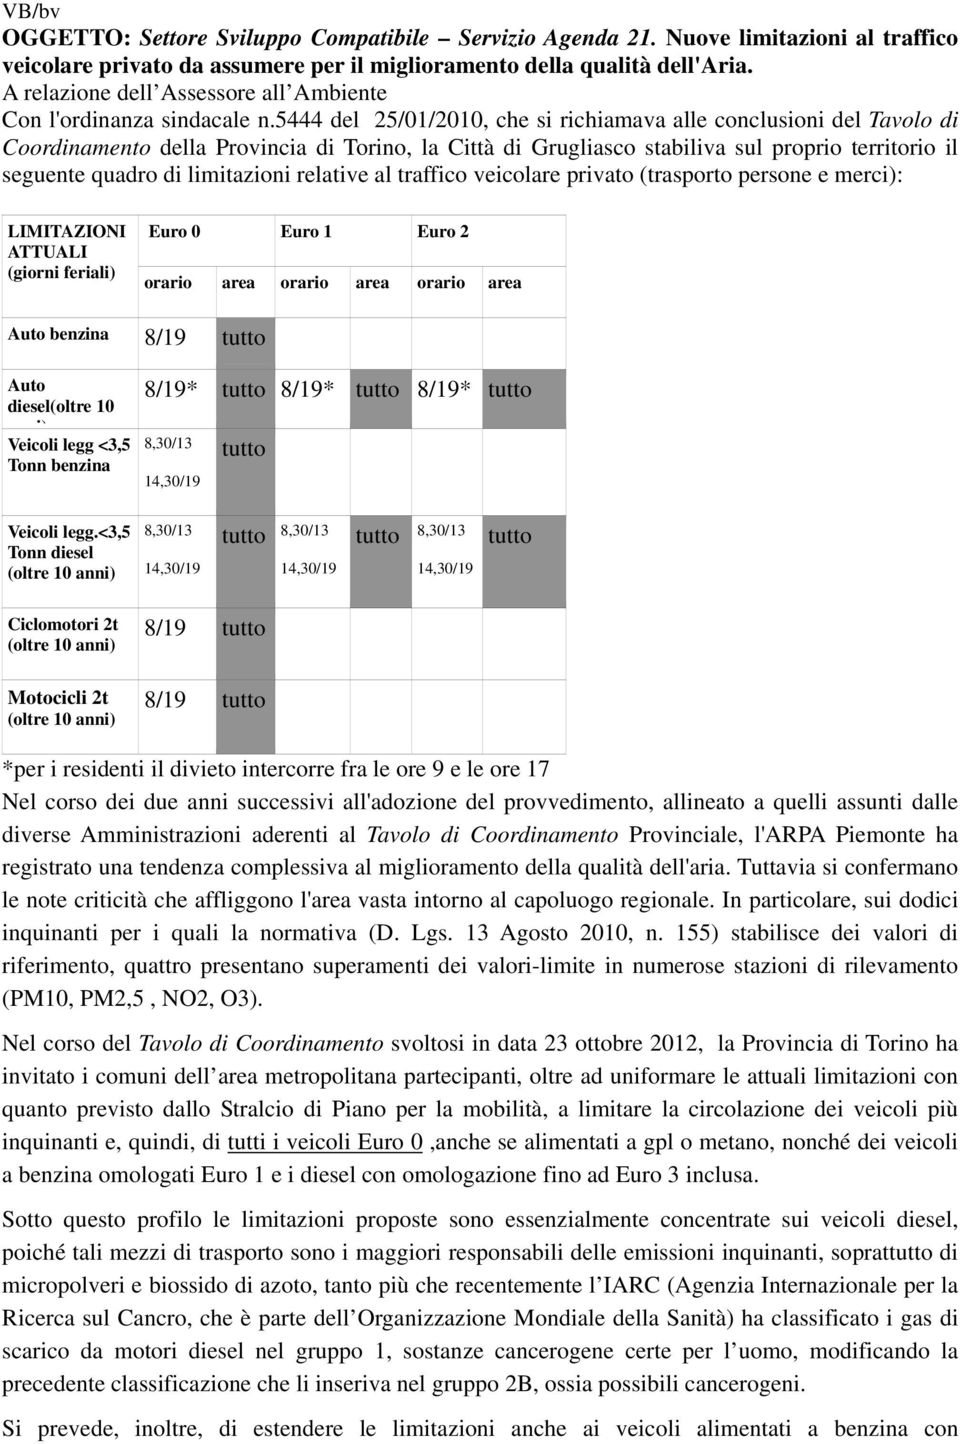 5444 del 25/01/2010, che si richiamava alle conclusioni del Tavolo di Coordinamento della Provincia di Torino, la Città di Grugliasco stabiliva sul proprio territorio il seguente quadro di